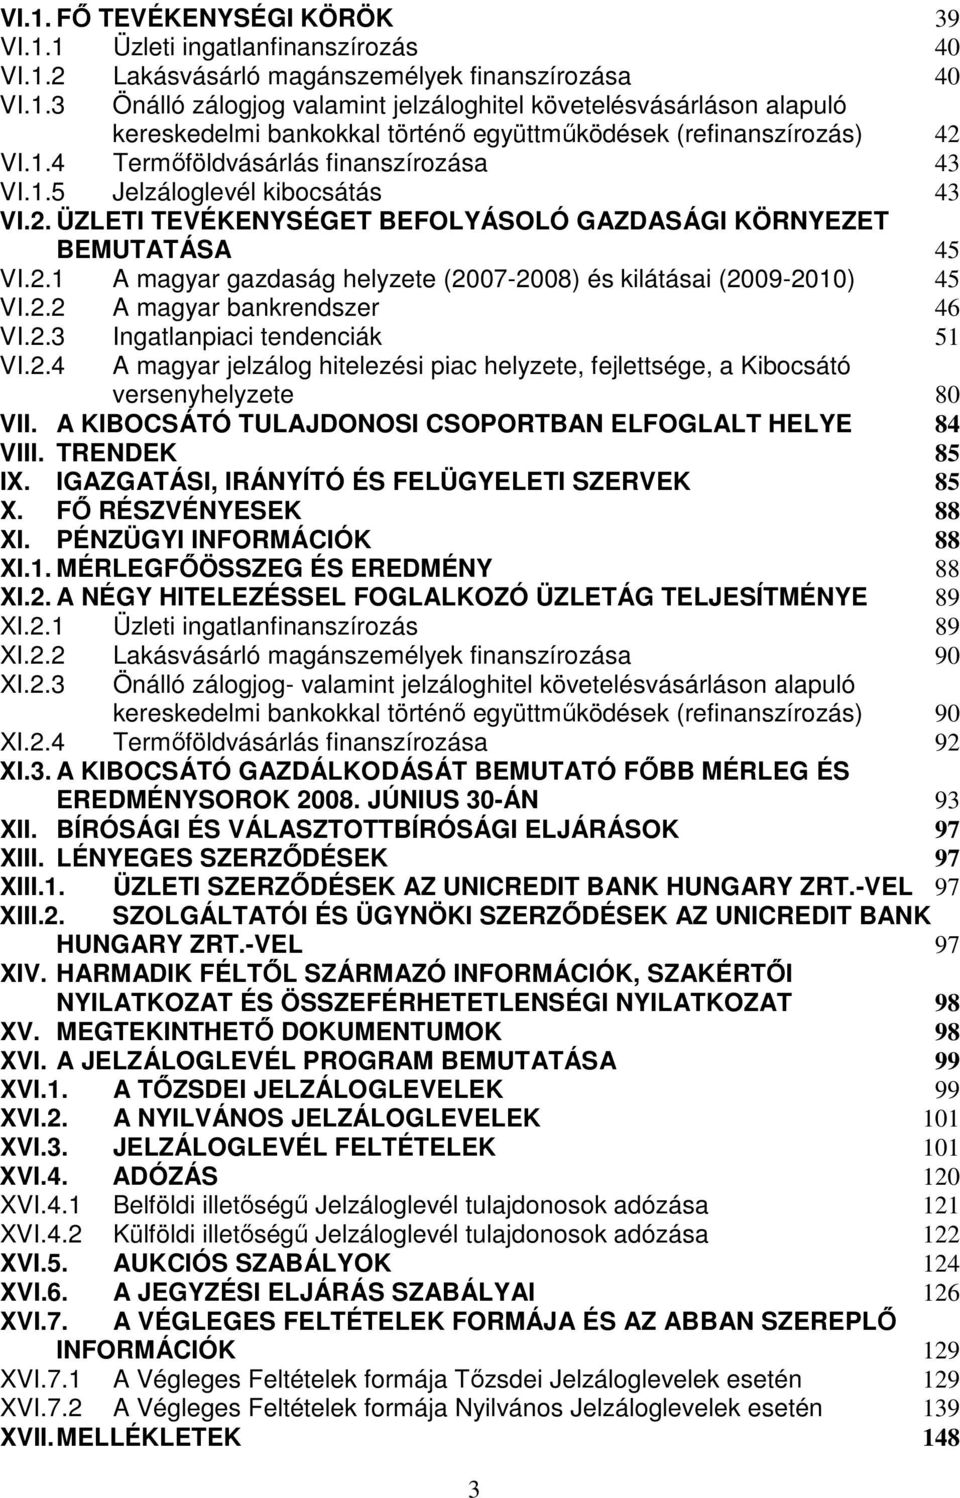 2.2 A magyar bankrendszer 46 VI.2.3 Ingatlanpiaci tendenciák 51 VI.2.4 A magyar jelzálog hitelezési piac helyzete, fejlettsége, a Kibocsátó versenyhelyzete 80 VII.